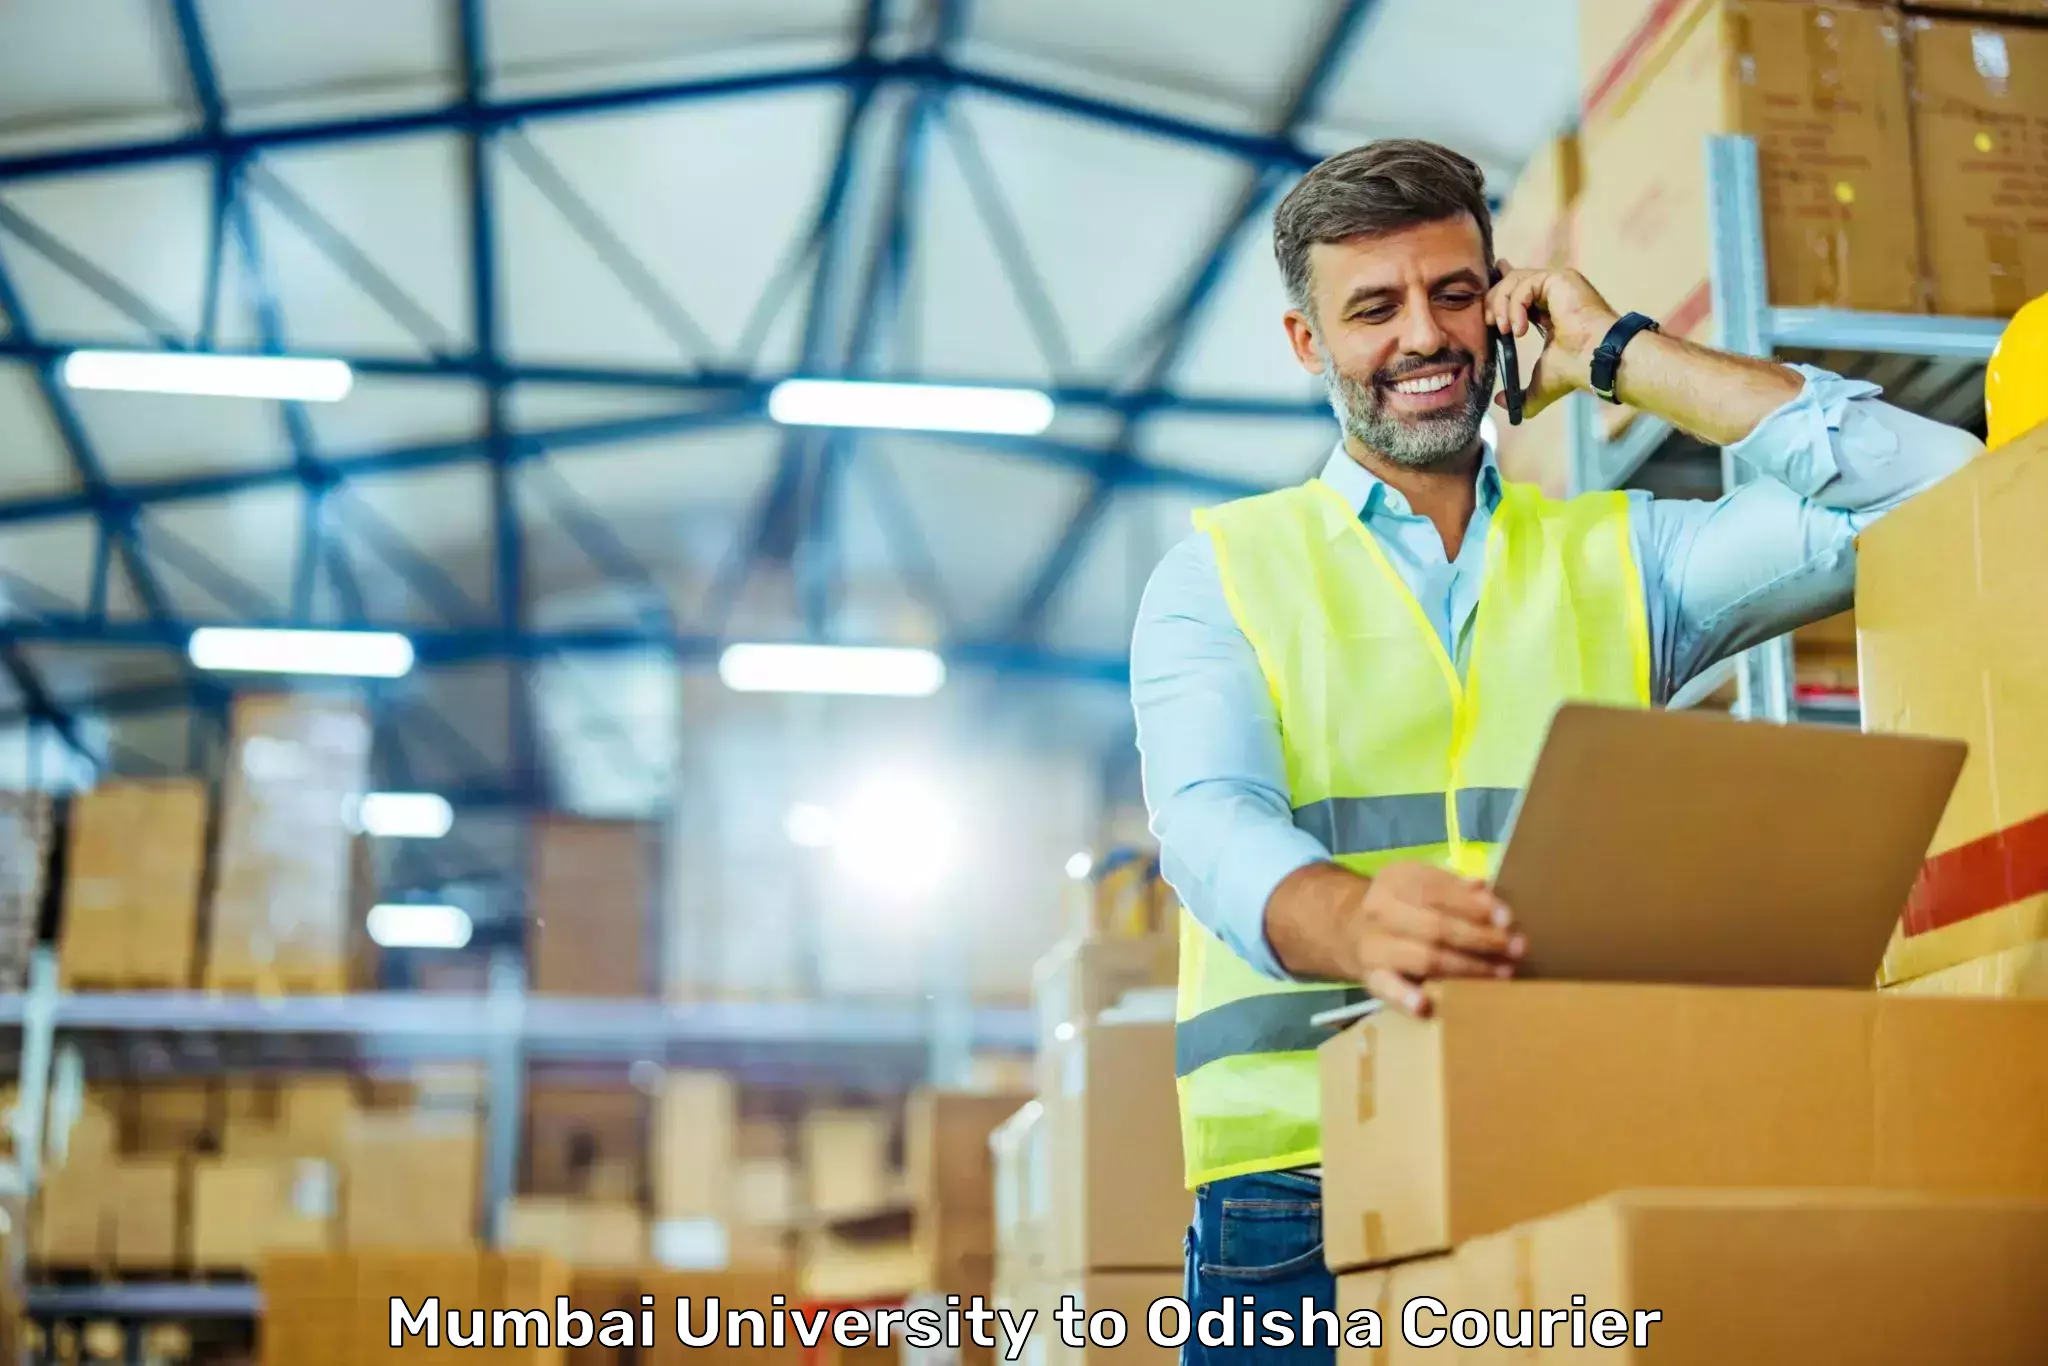 Efficient freight service Mumbai University to Mathili